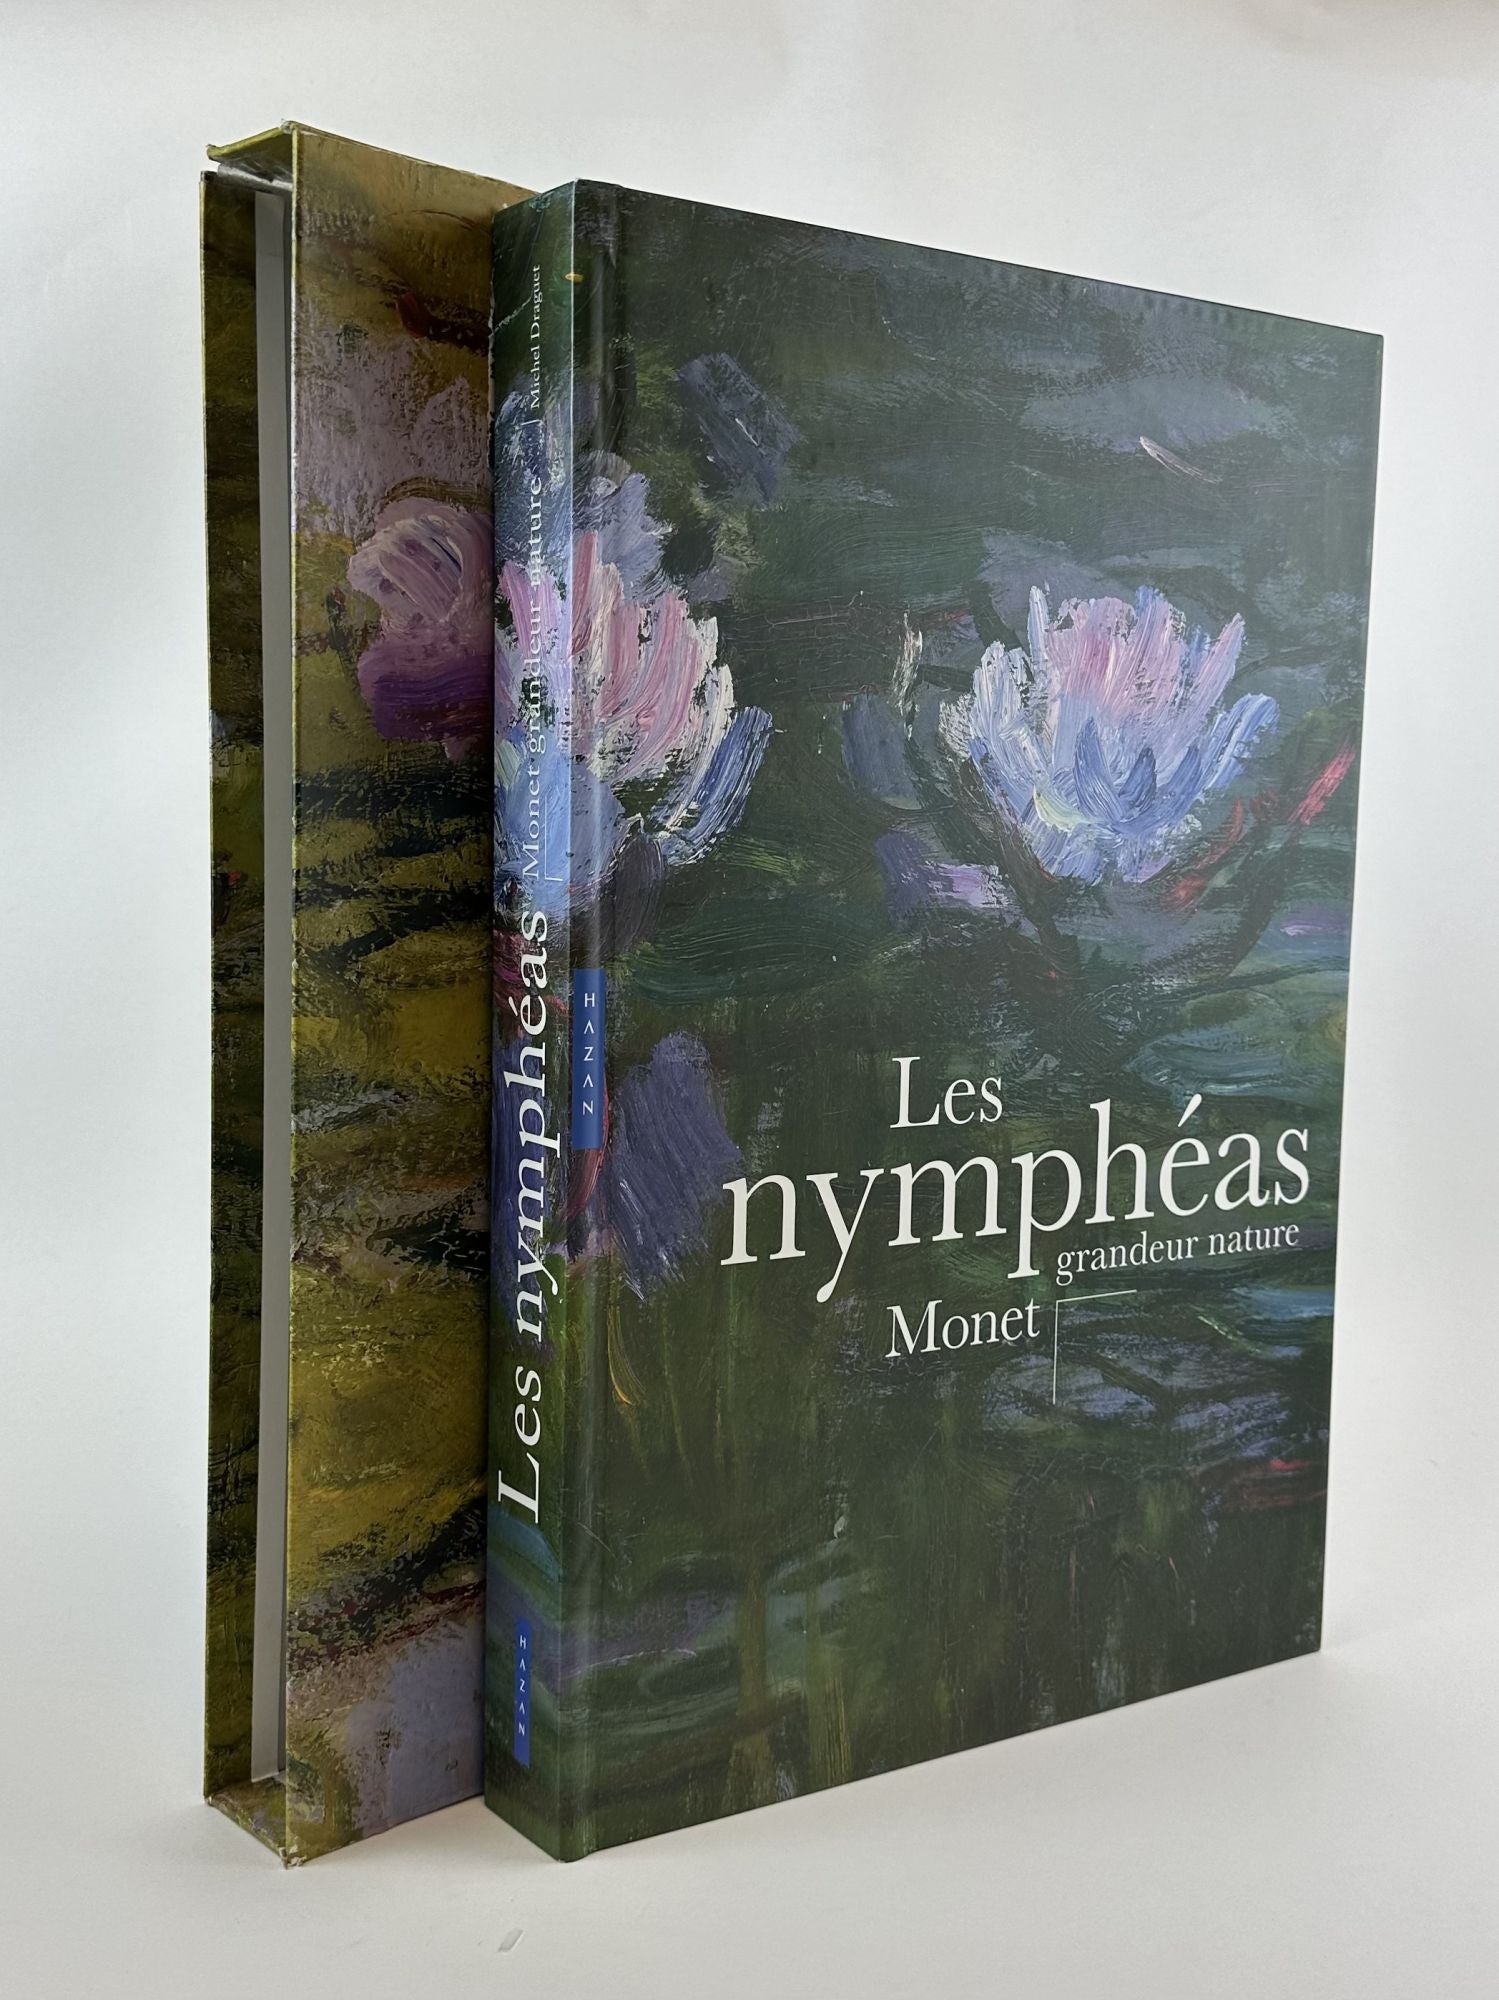 【限定SALE高品質】Les Nymphas Monet grandeur nature Michel Draguet ハードカバー 画集